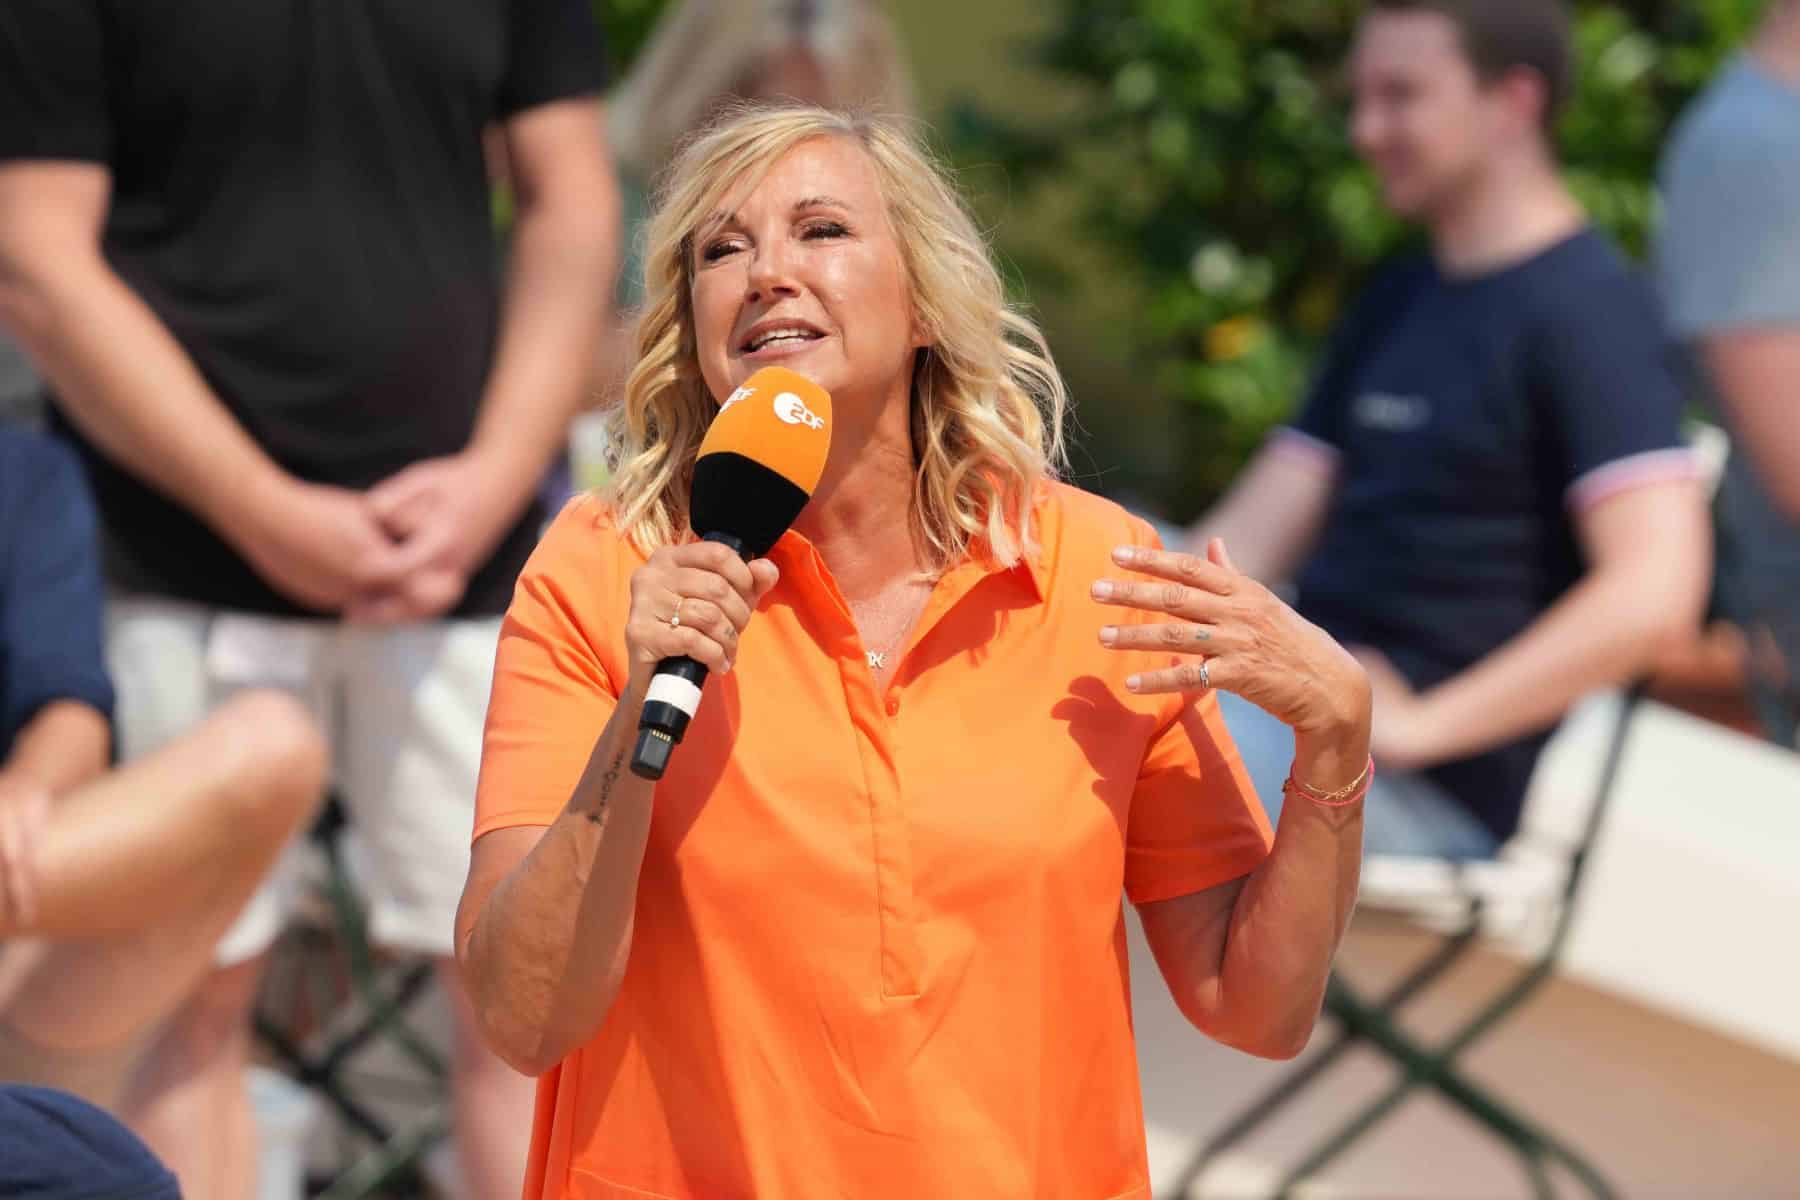 Andrea „Kiwi“ Kiewel in der Unterhaltungsshow ZDF Fernsehgarten am 25.06.2023 in Mainz.